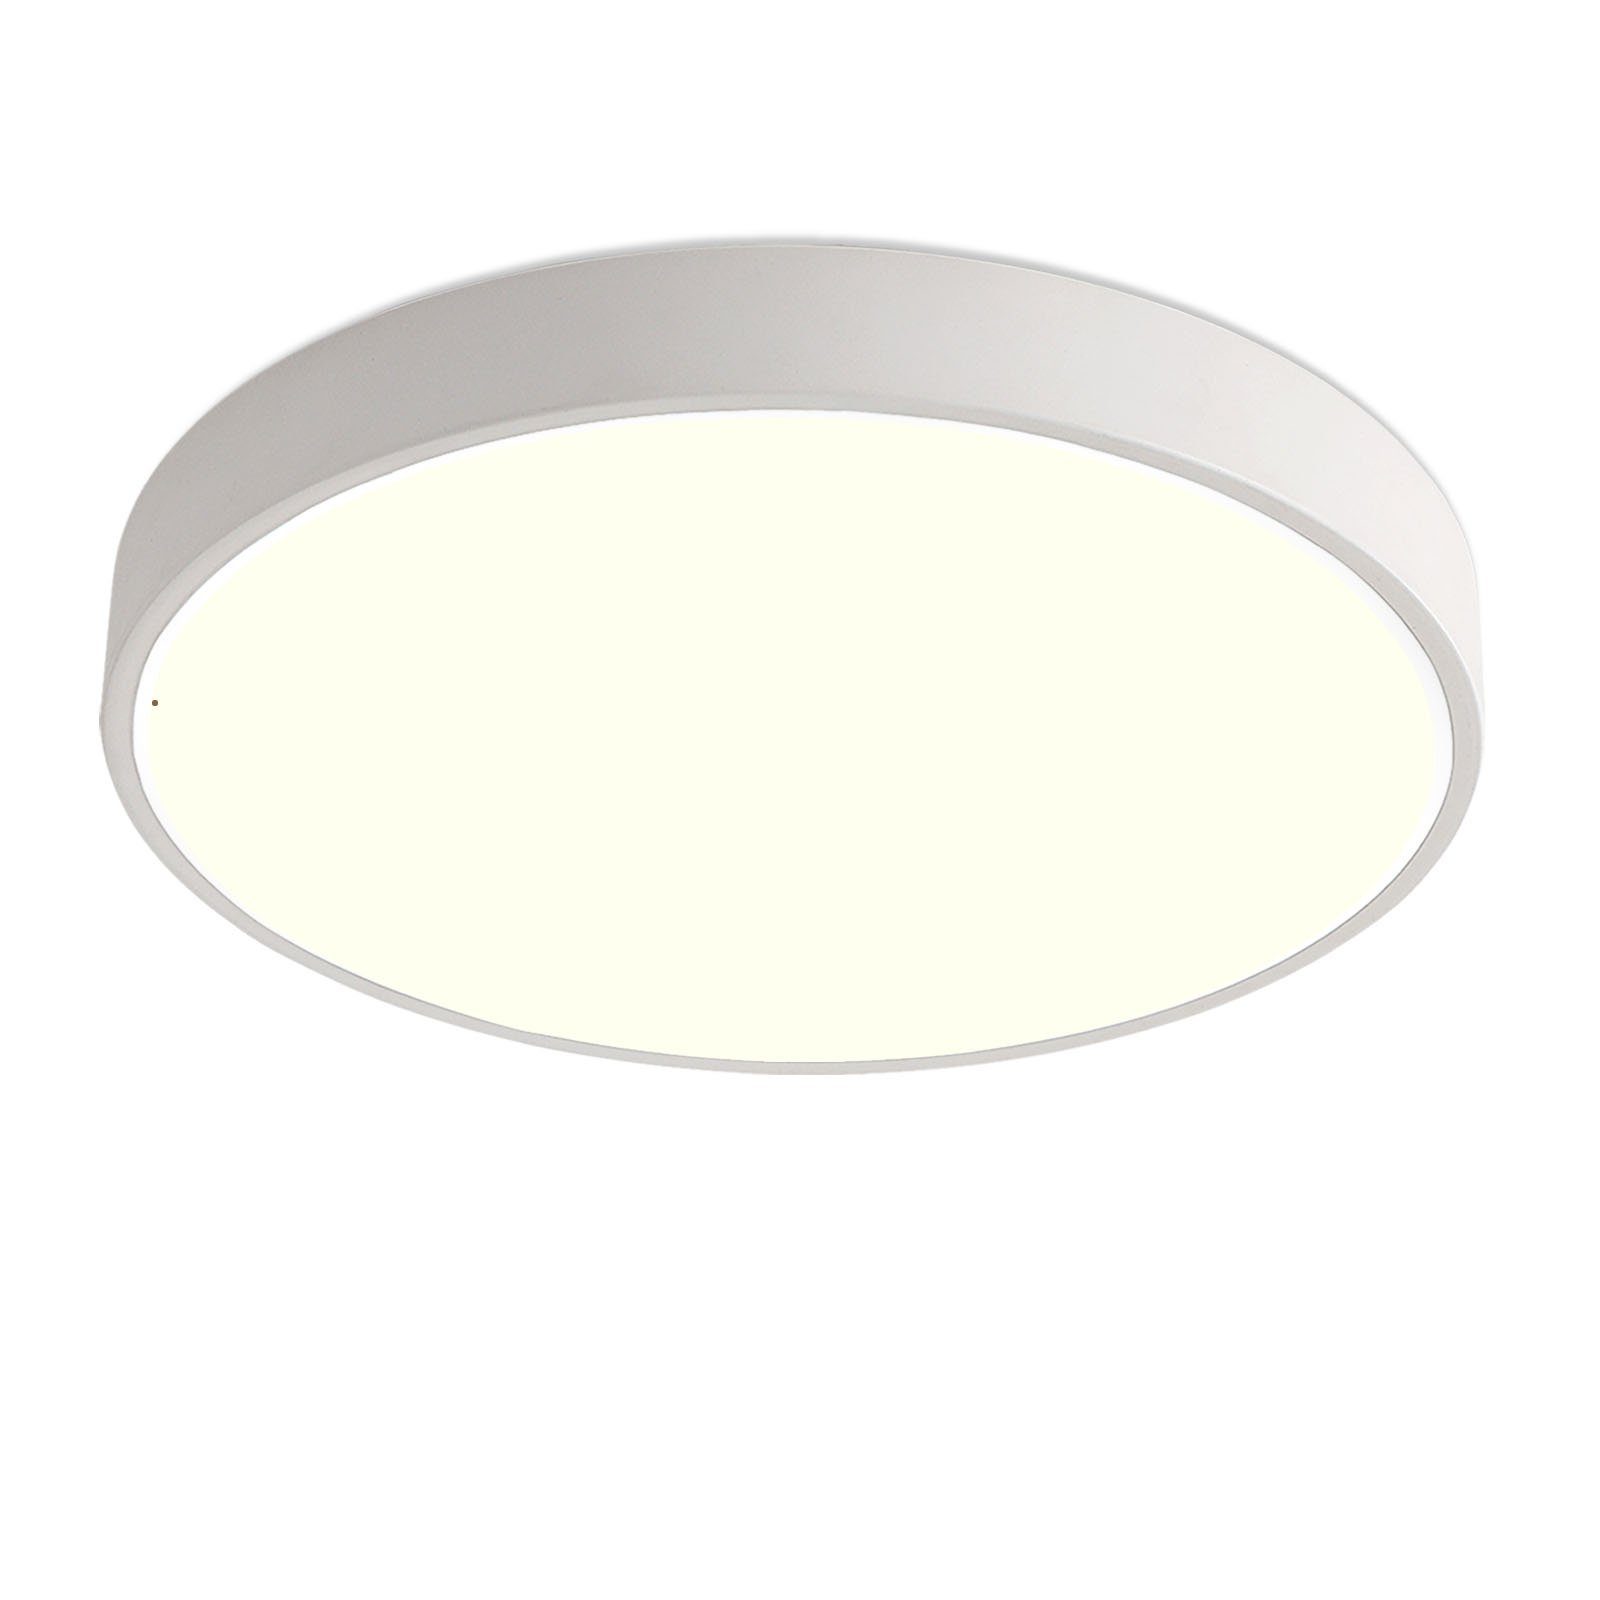 Natsen Deckenleuchte Runde LED Deckenlampe, 24W, Warmweiß 3000K, Schlafzimmer Lampe Küchenlampe 30x30x4 cm, Weiß